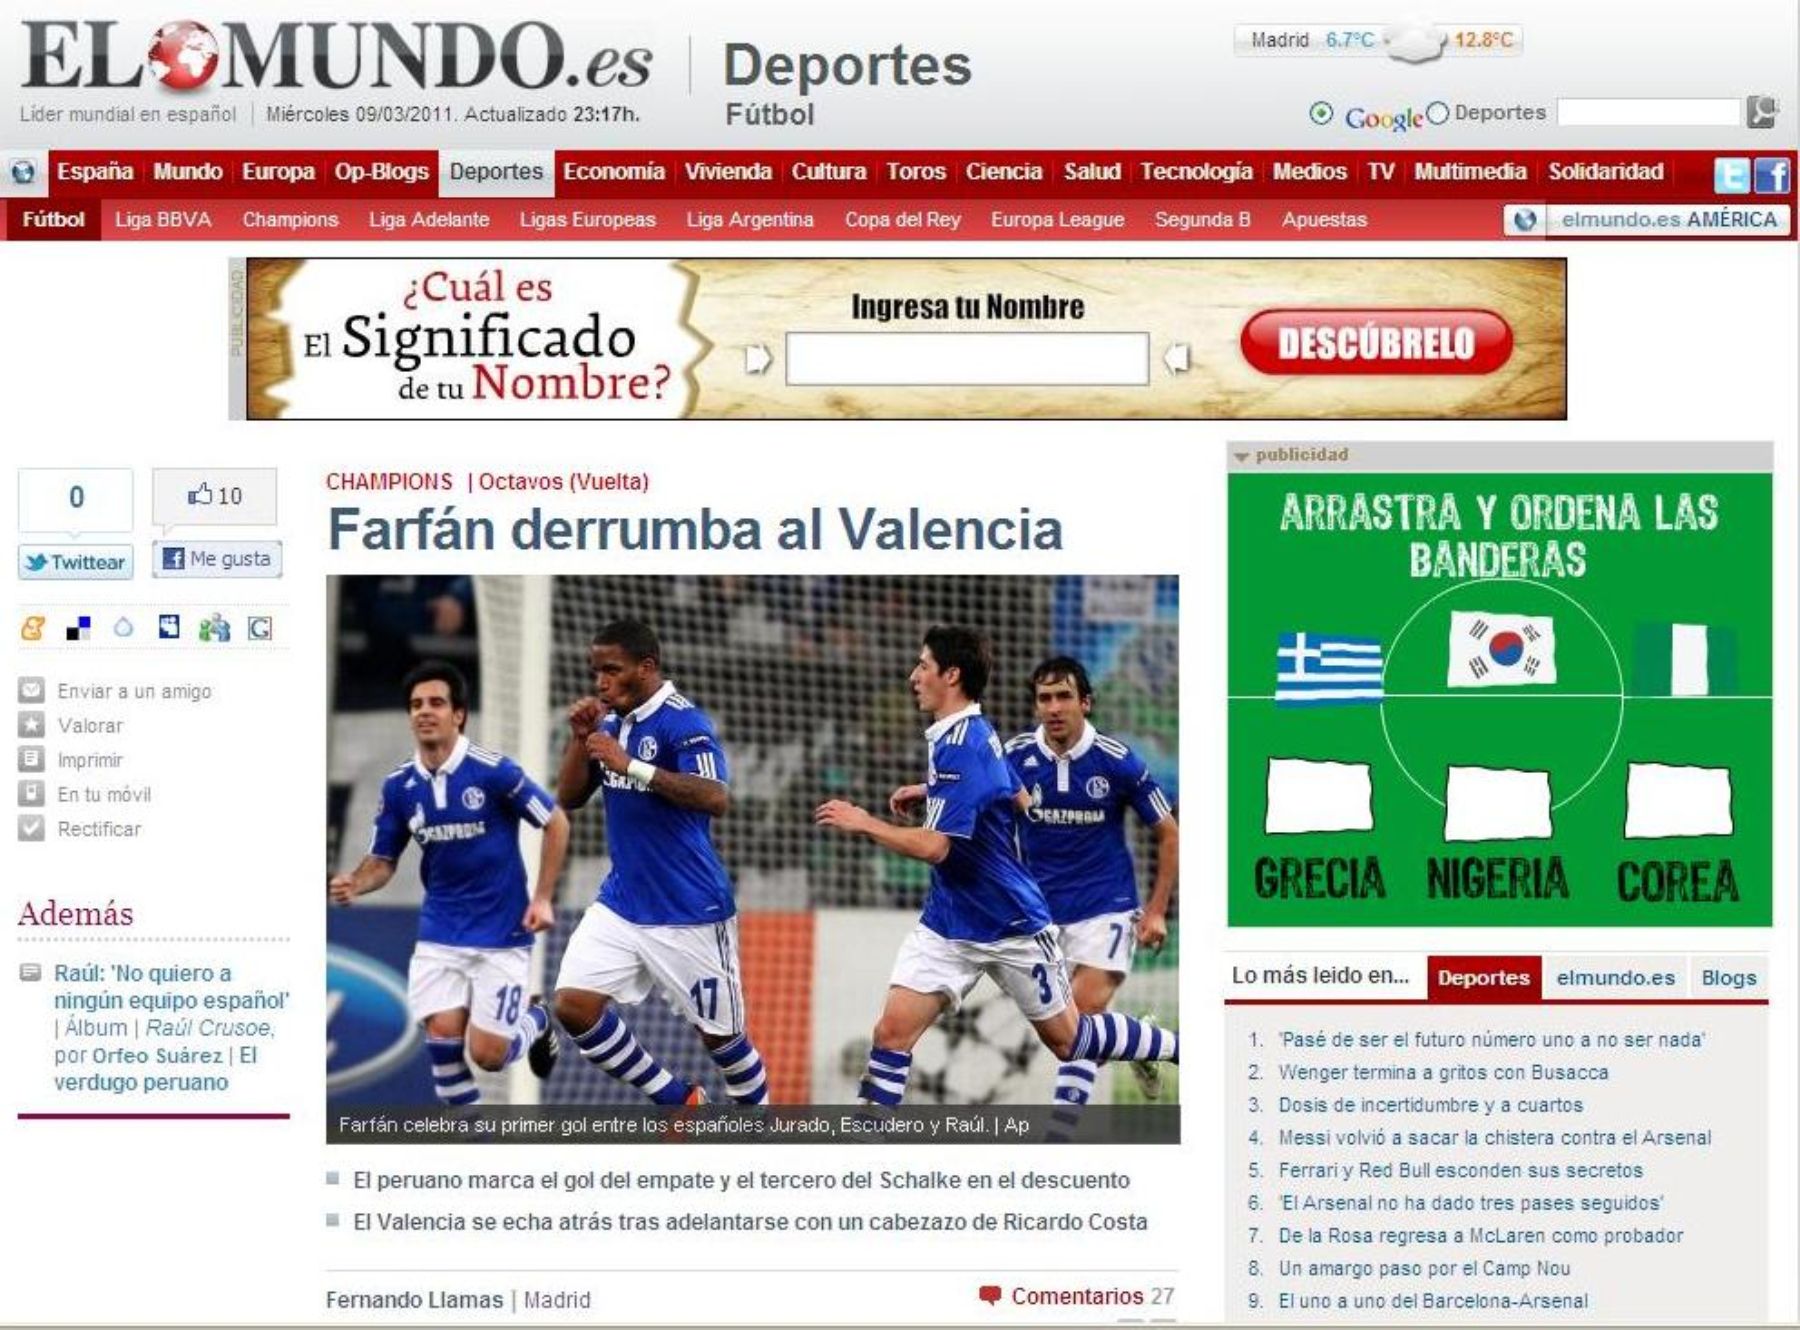 Diario español El Mundo destacó los dos golazos del delantero peruano Jefferson Farfán ante Valencia de España.